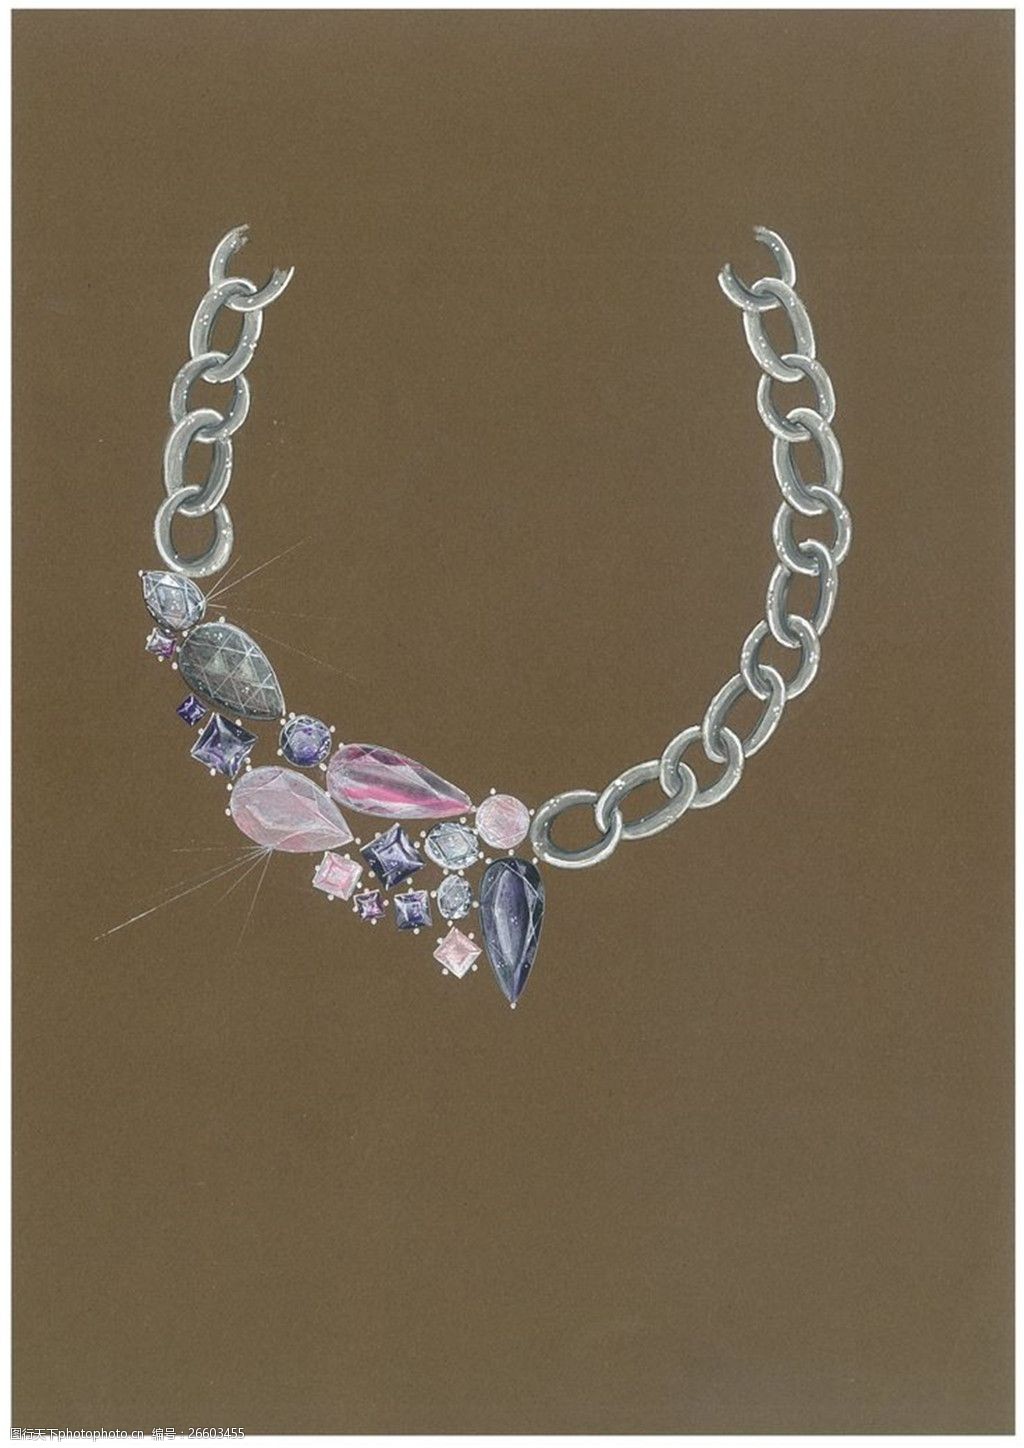 关键词:美丽彩色珠宝图片设计 手绘 珠宝 项链 时尚 创意 潮流 新颖